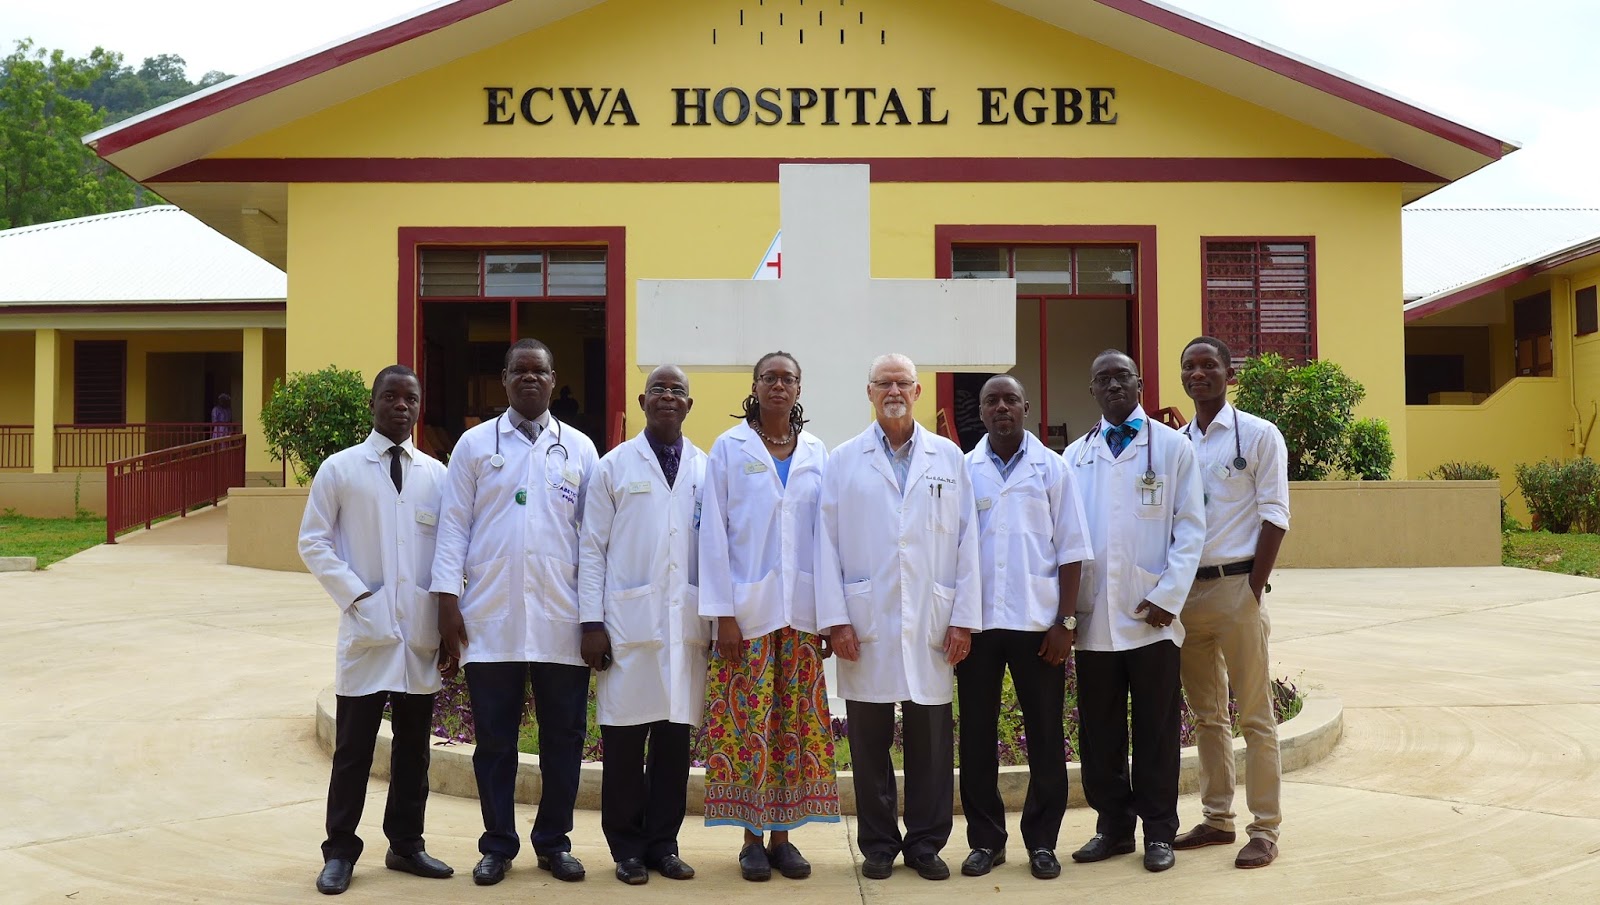 ECWA Egbe Hospital Staff